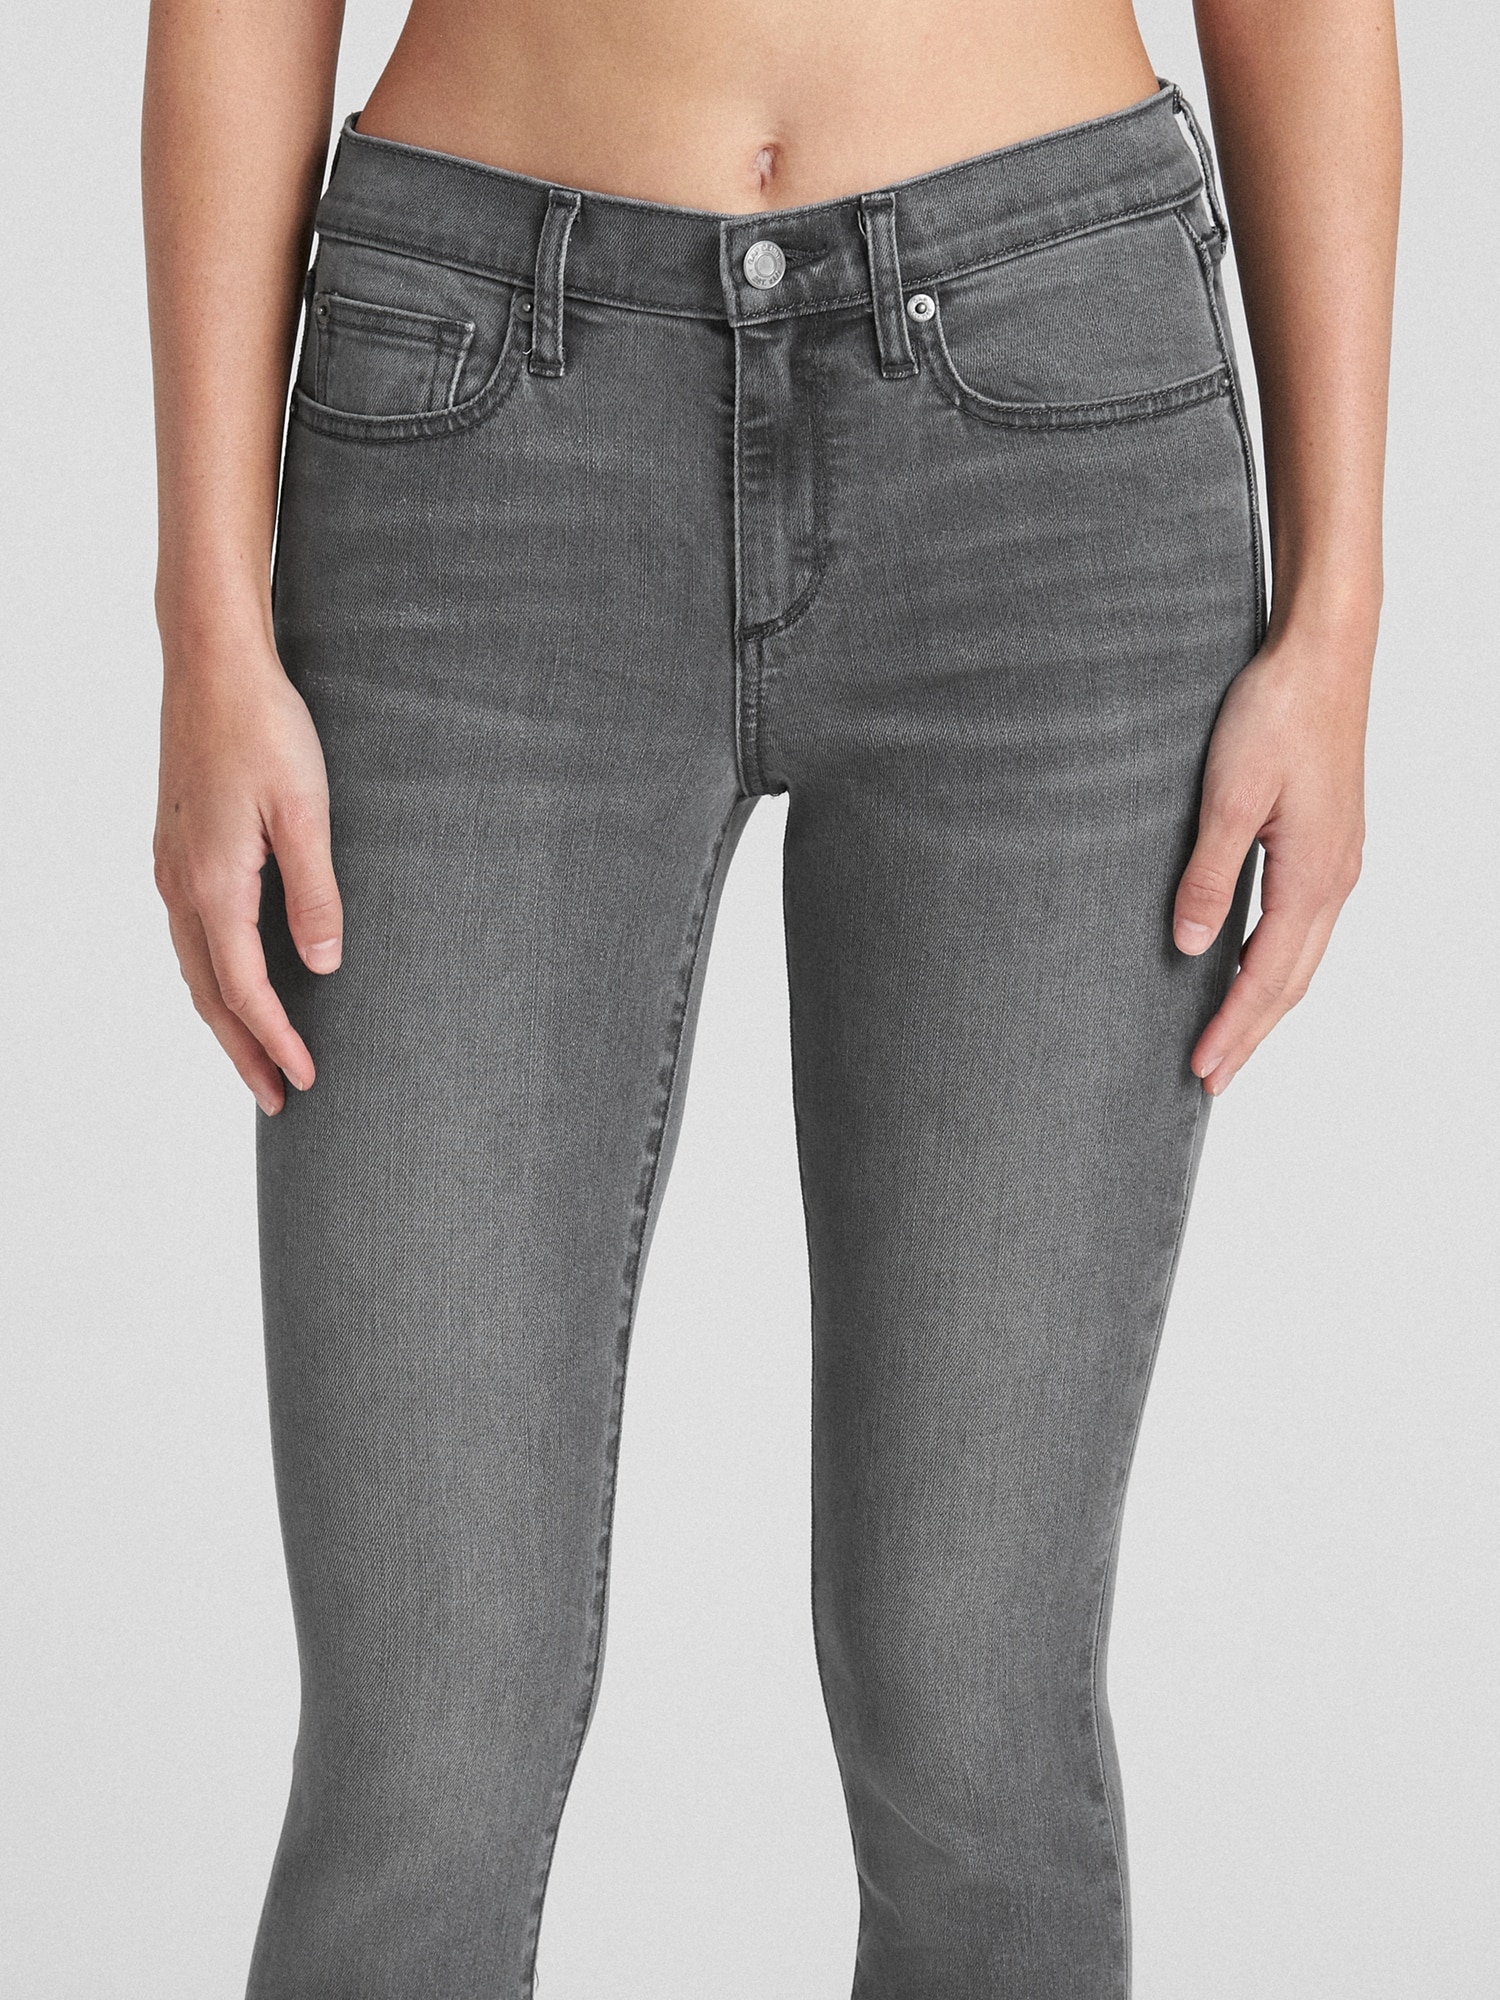 Gap Soft Wear Orta Belli True Skinny Jean Pantolon. 3